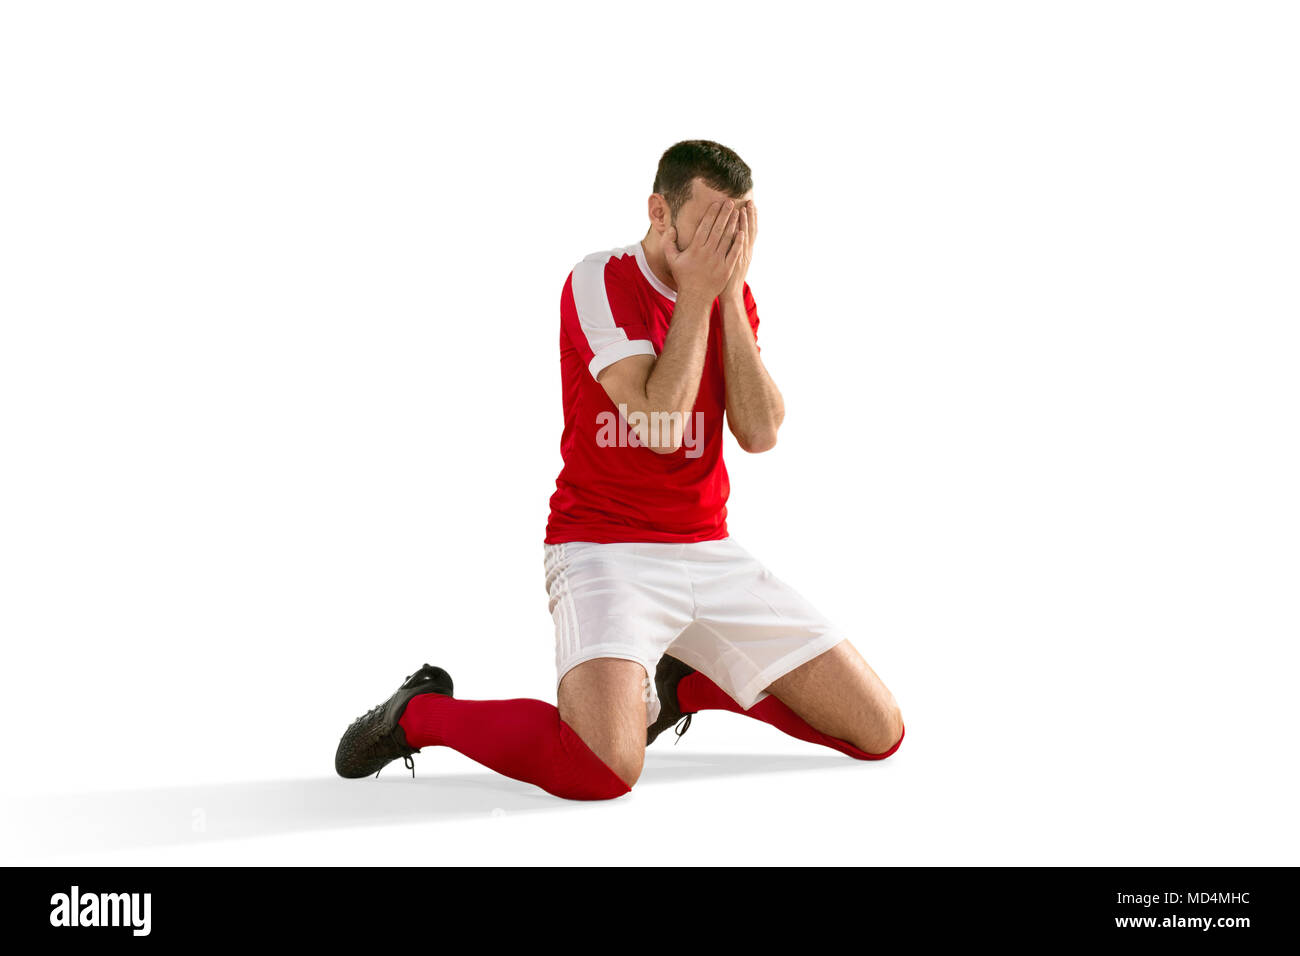 Joueur de football ou soccer malheureux avec palm sur son visage Banque D'Images